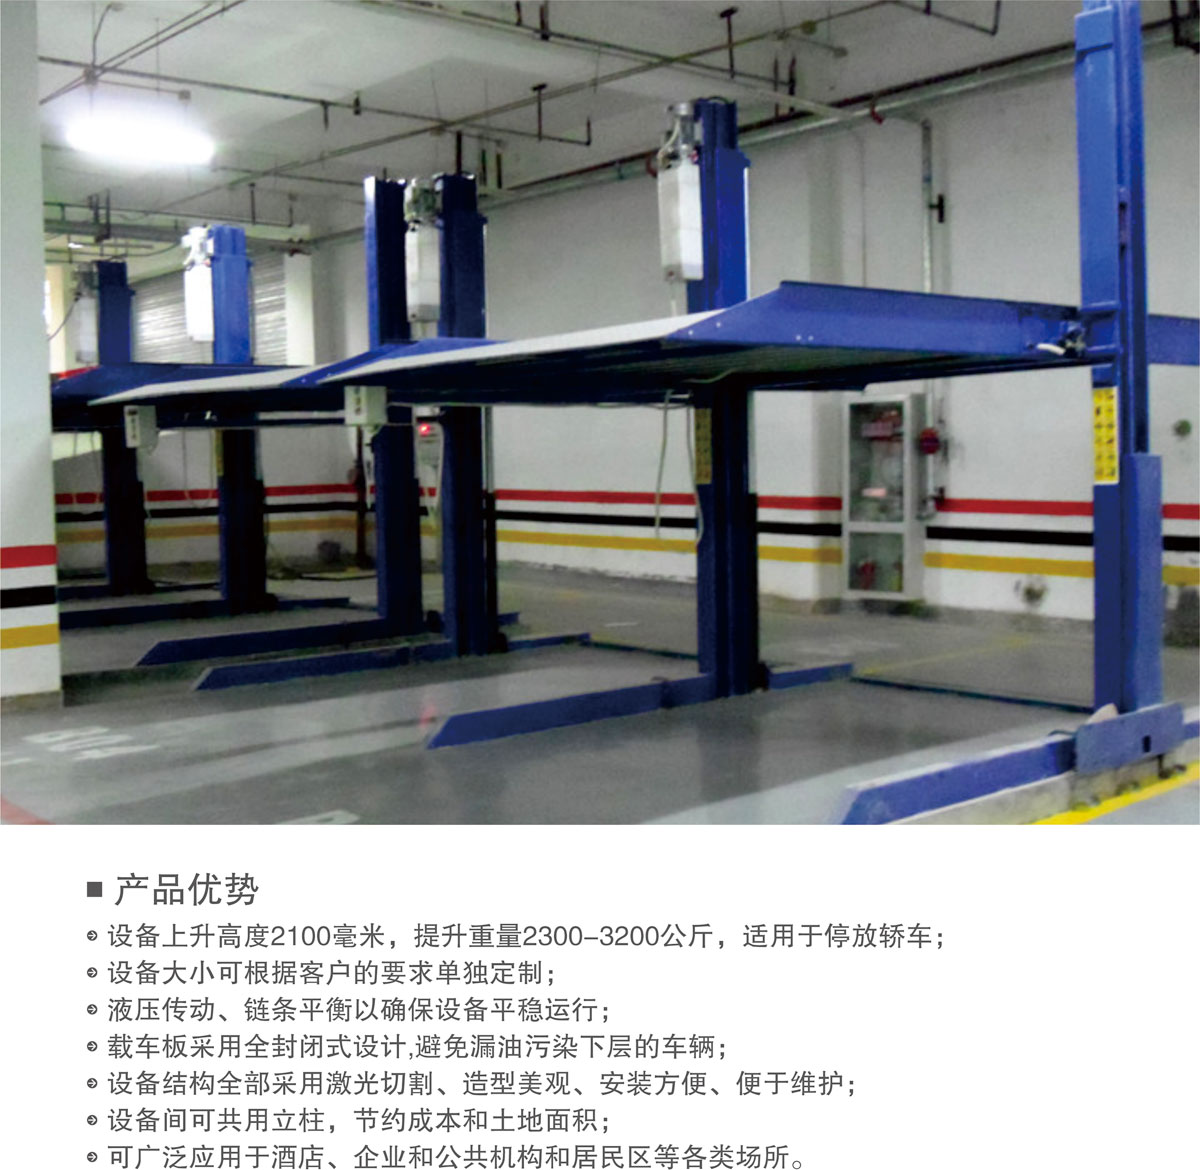 贵阳莱贝PJS两柱简易升降机械式立体停车库产品优势.jpg